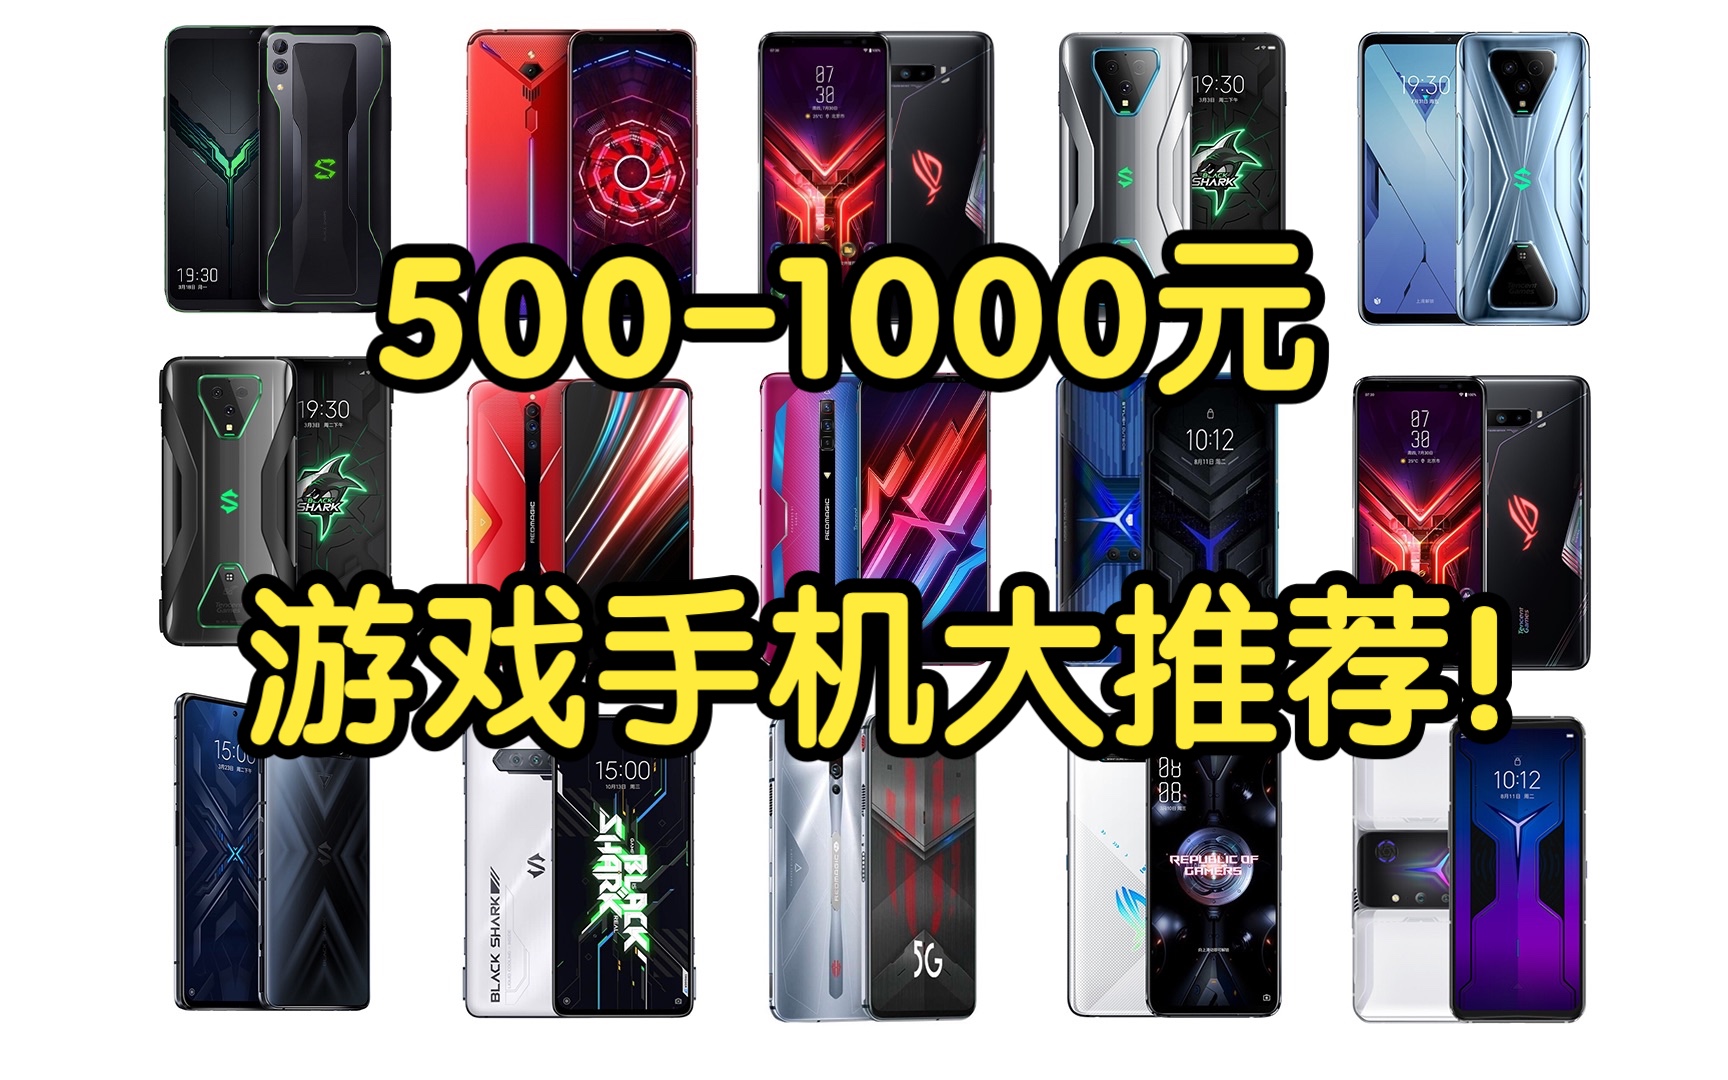 【Caibao】500-1000元游戏手机大推荐！低价位二手电竞手机推荐！超强性能性价比超高！学生党必看！建议收藏！